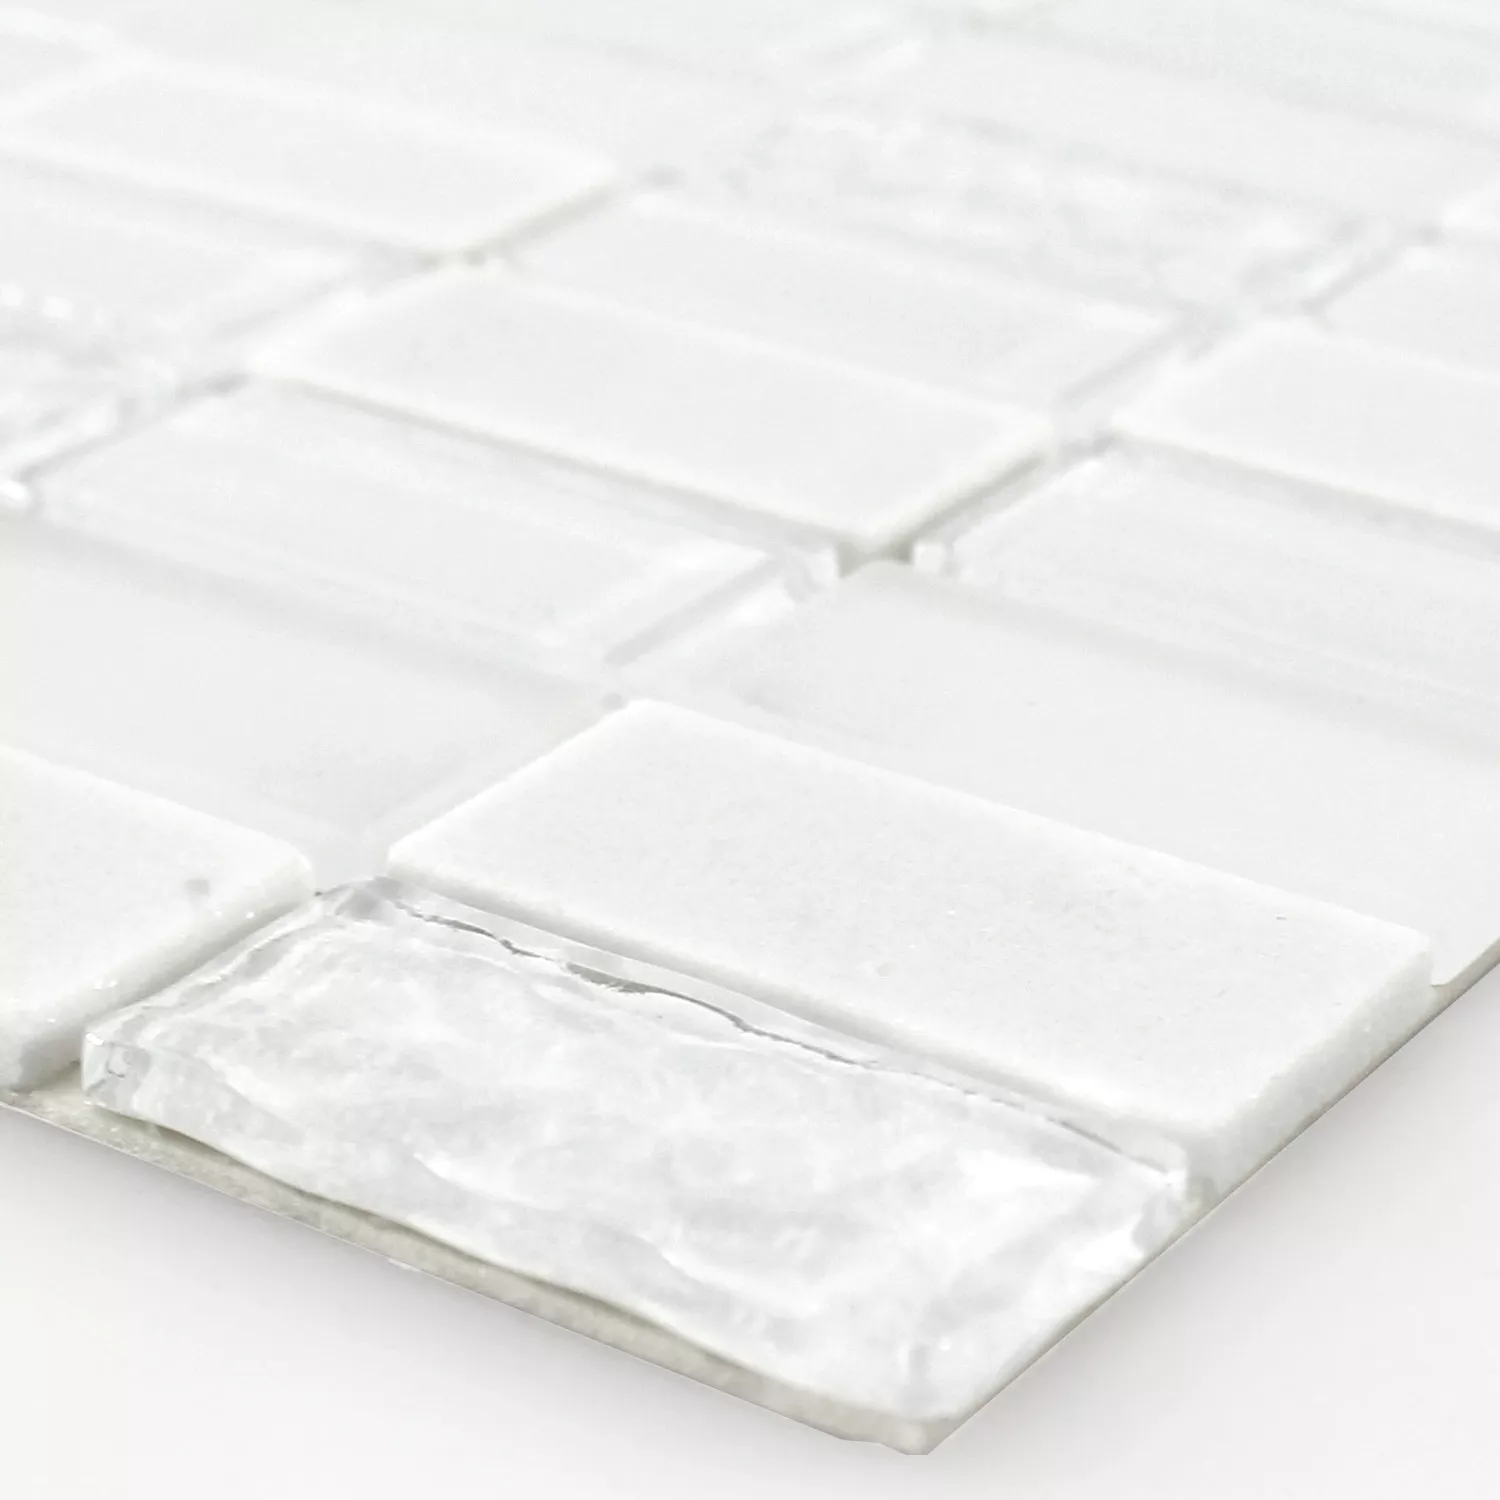 Selbstklebende Mosaik Naturstein Glas Mix Weiss Poliert